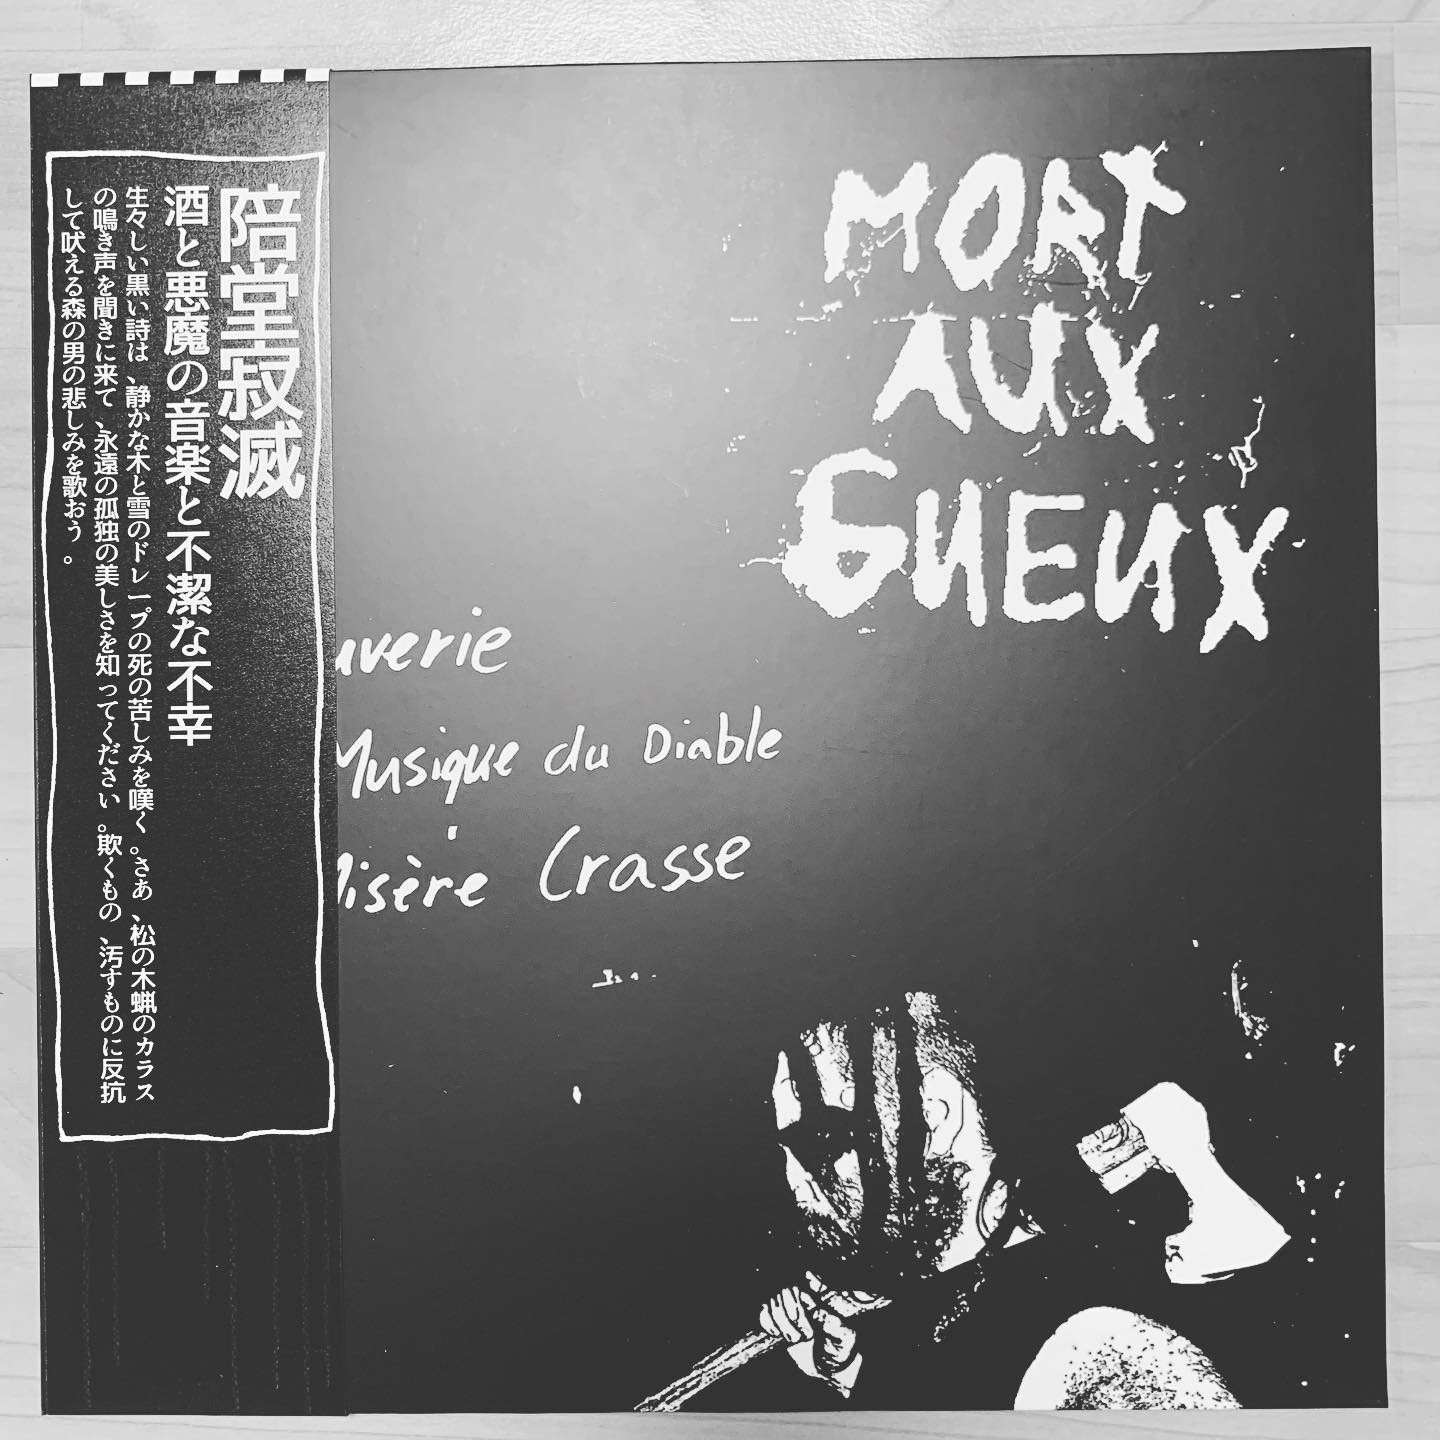 WAXGOAT269 Mort aux Gueux (Can) - Beuverie, musique du diable et misère LP